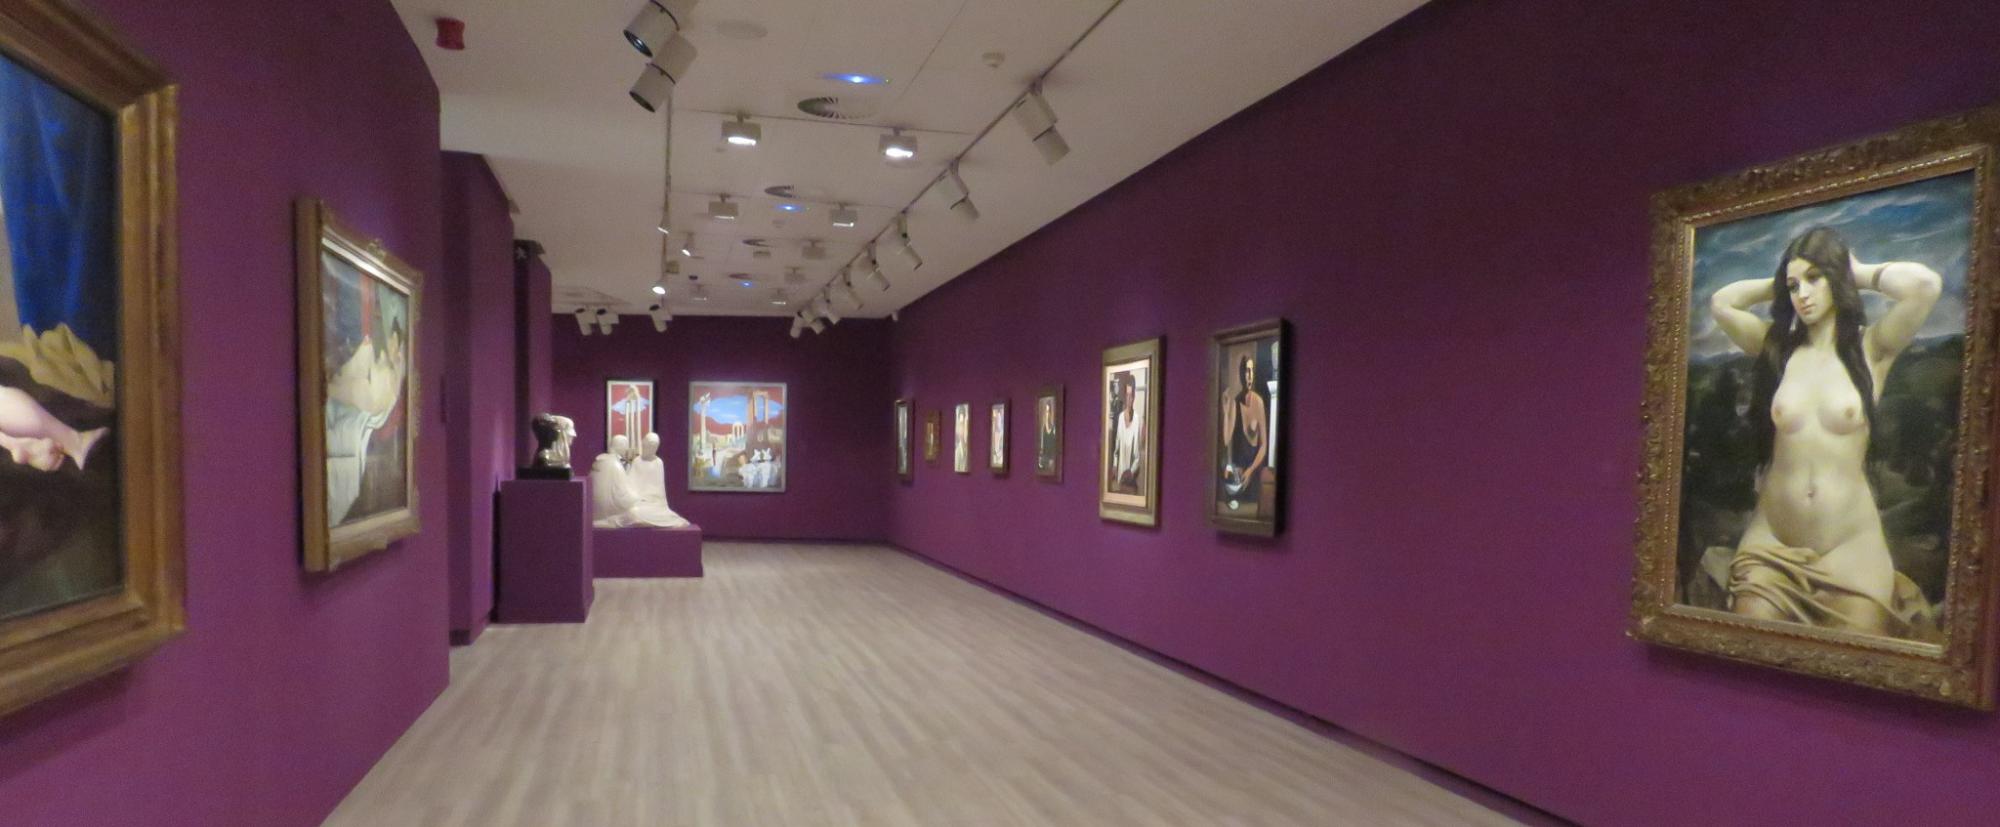 La exposición: “Retorno a la Belleza. Obras maestras del arte italiano de entreguerras